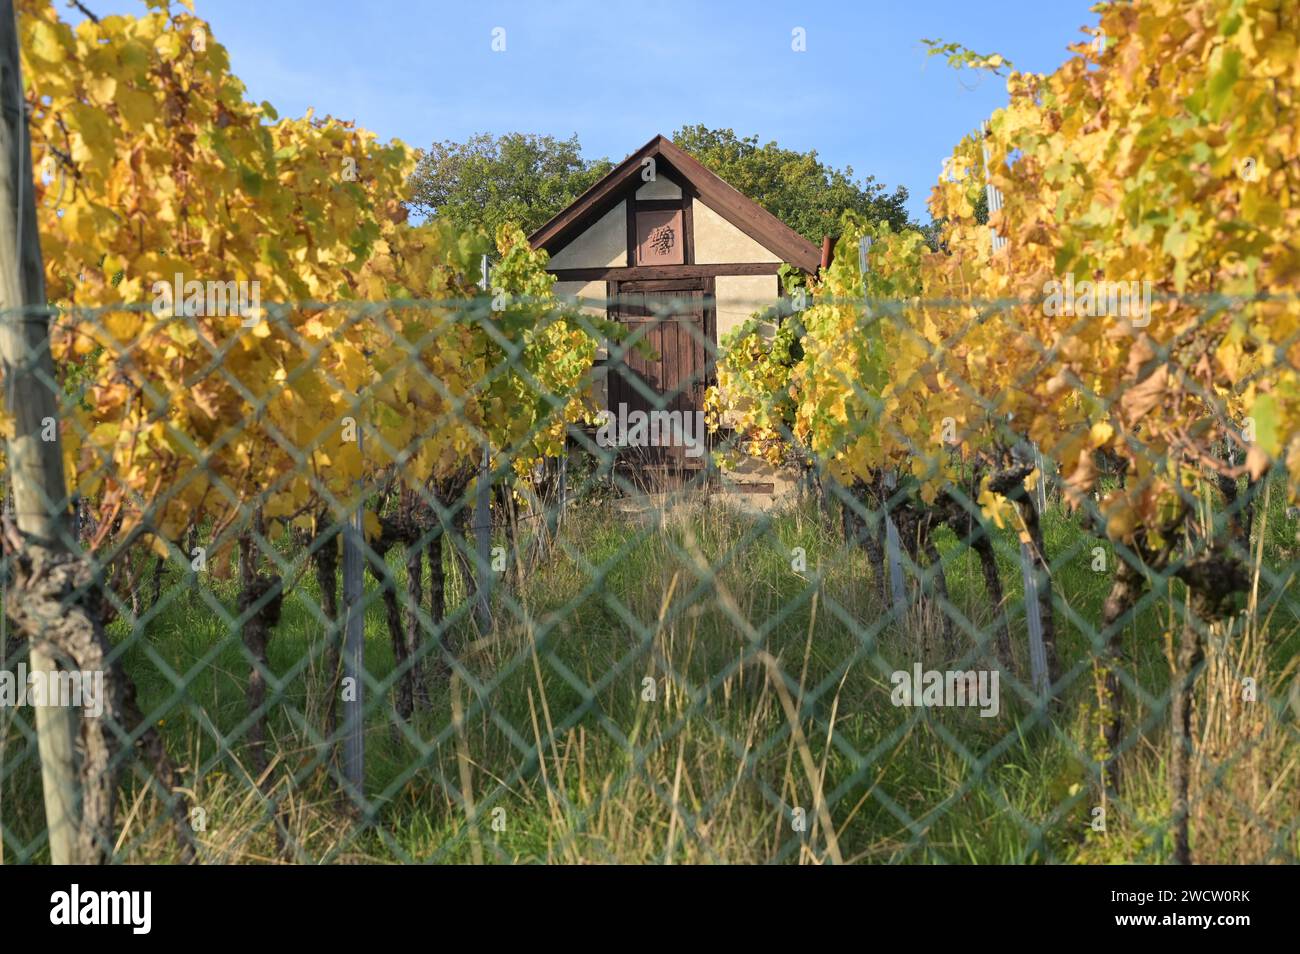 Weinberg im Herbst - Weinberghütte und Reben mit gelben, braunen und grünen Blättern in der Abendsonne. Stockfoto